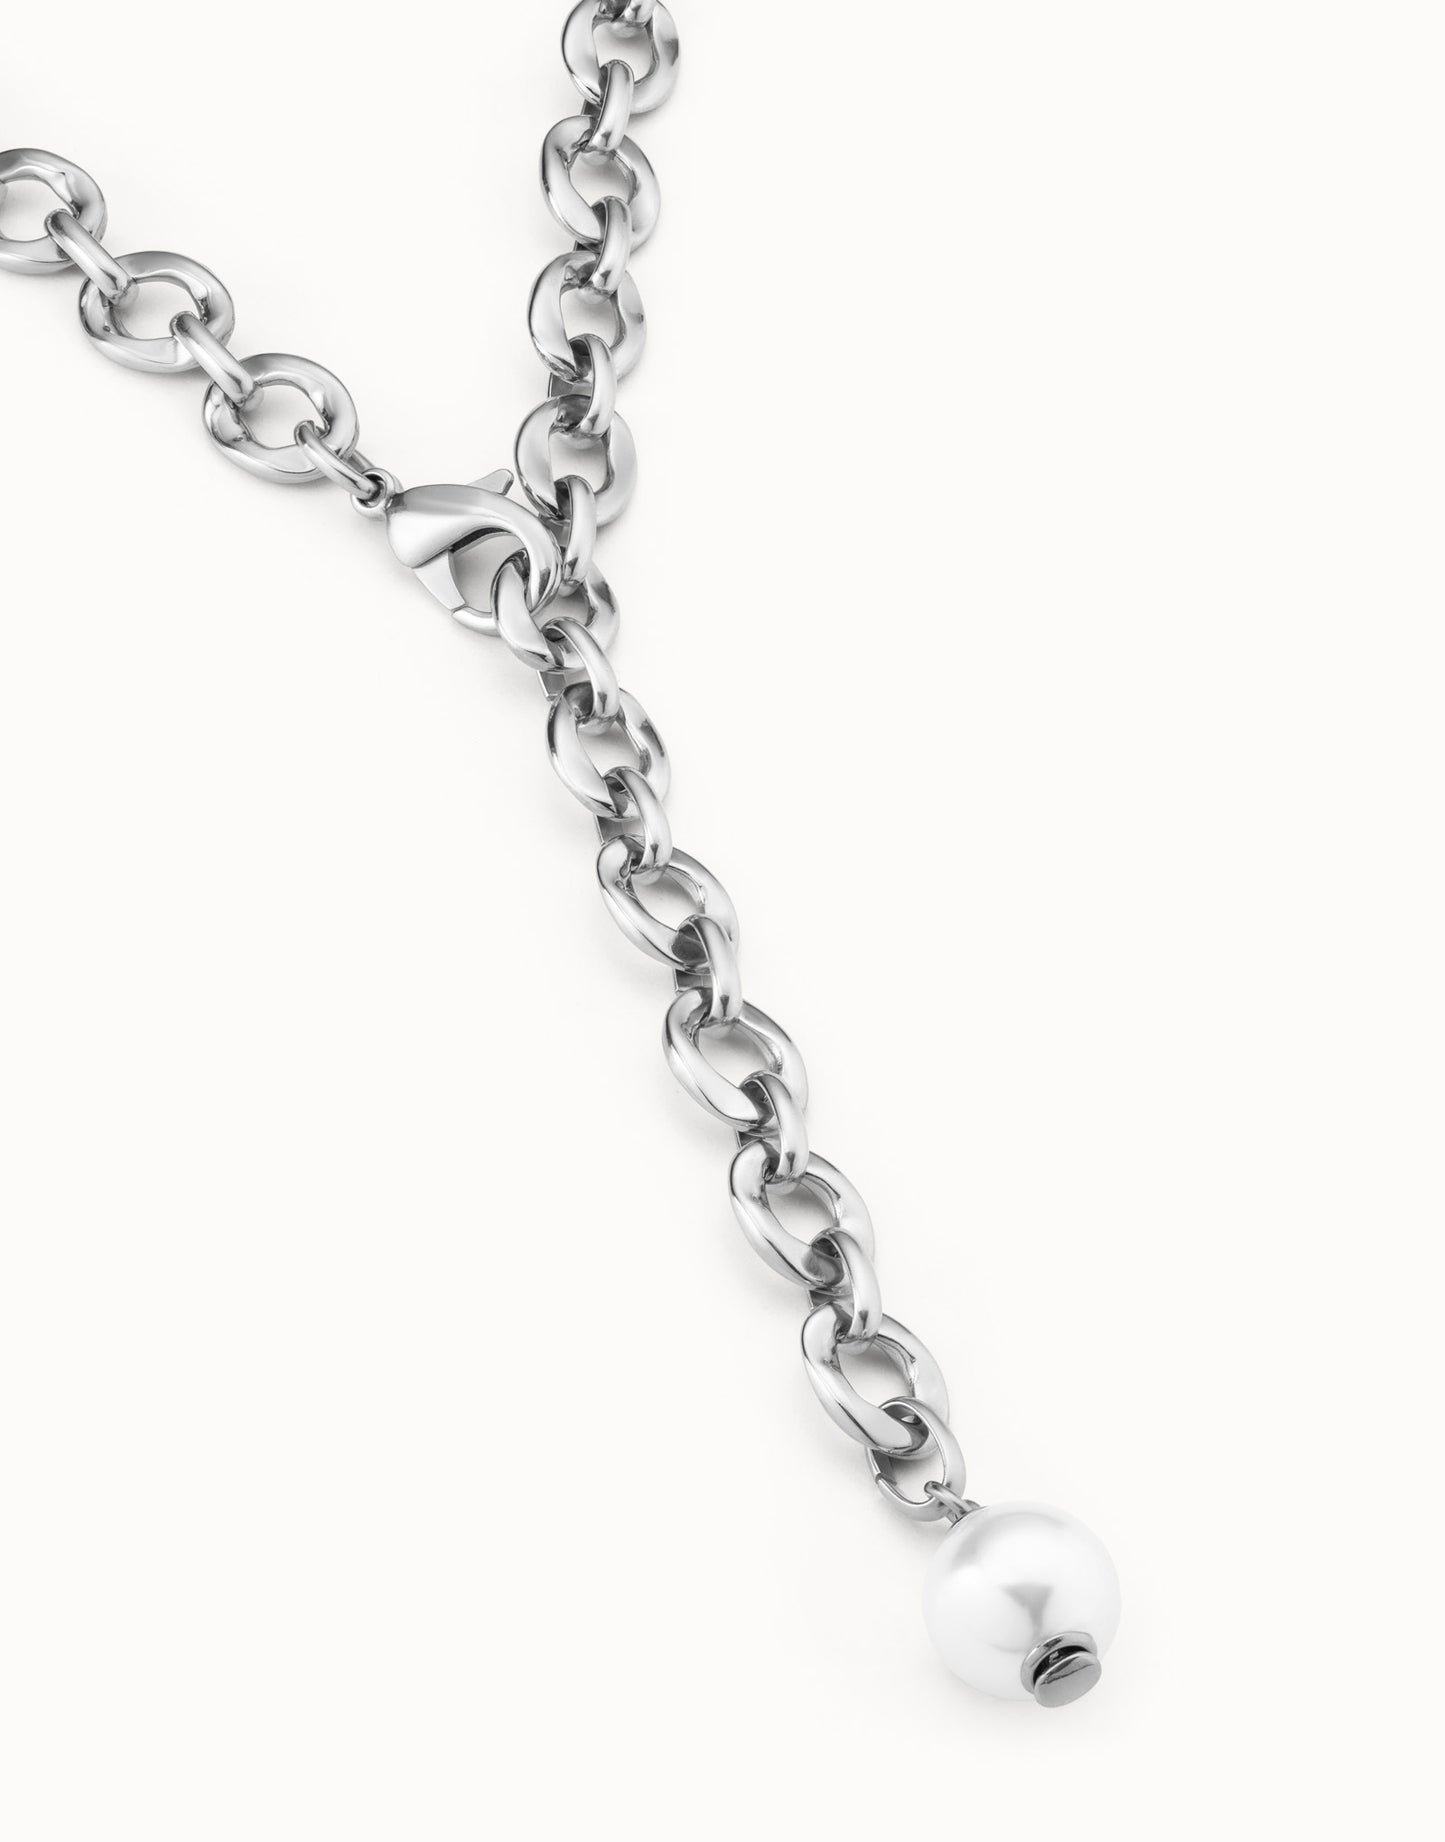 Uno de 50 "Joy of Living" Necklace-Silver